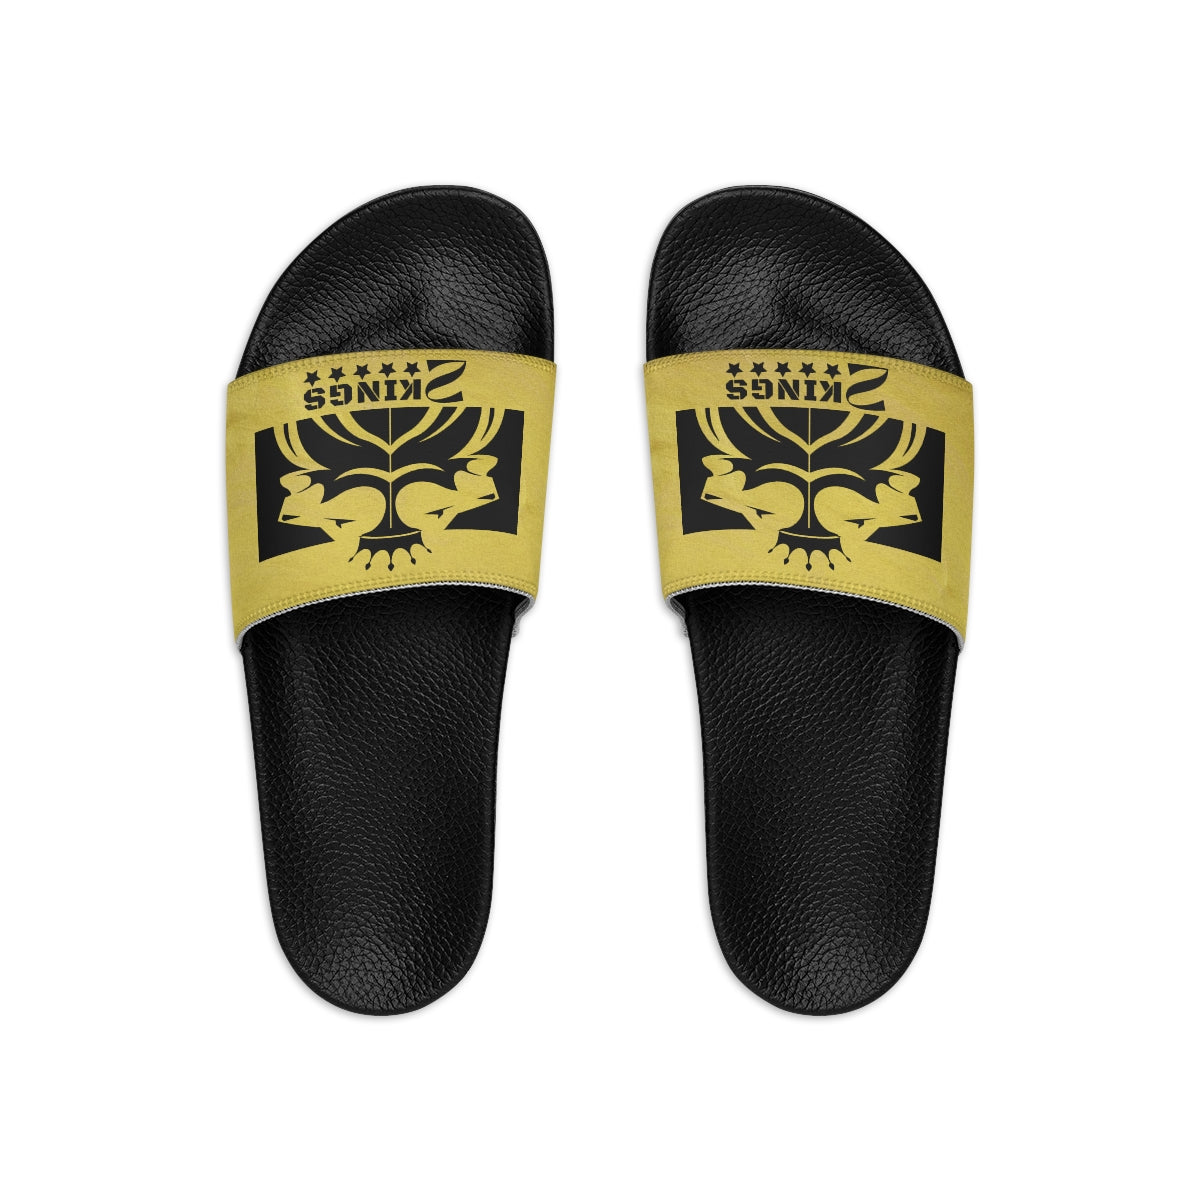 2 Kings Coffee - Men's Slide Sandals